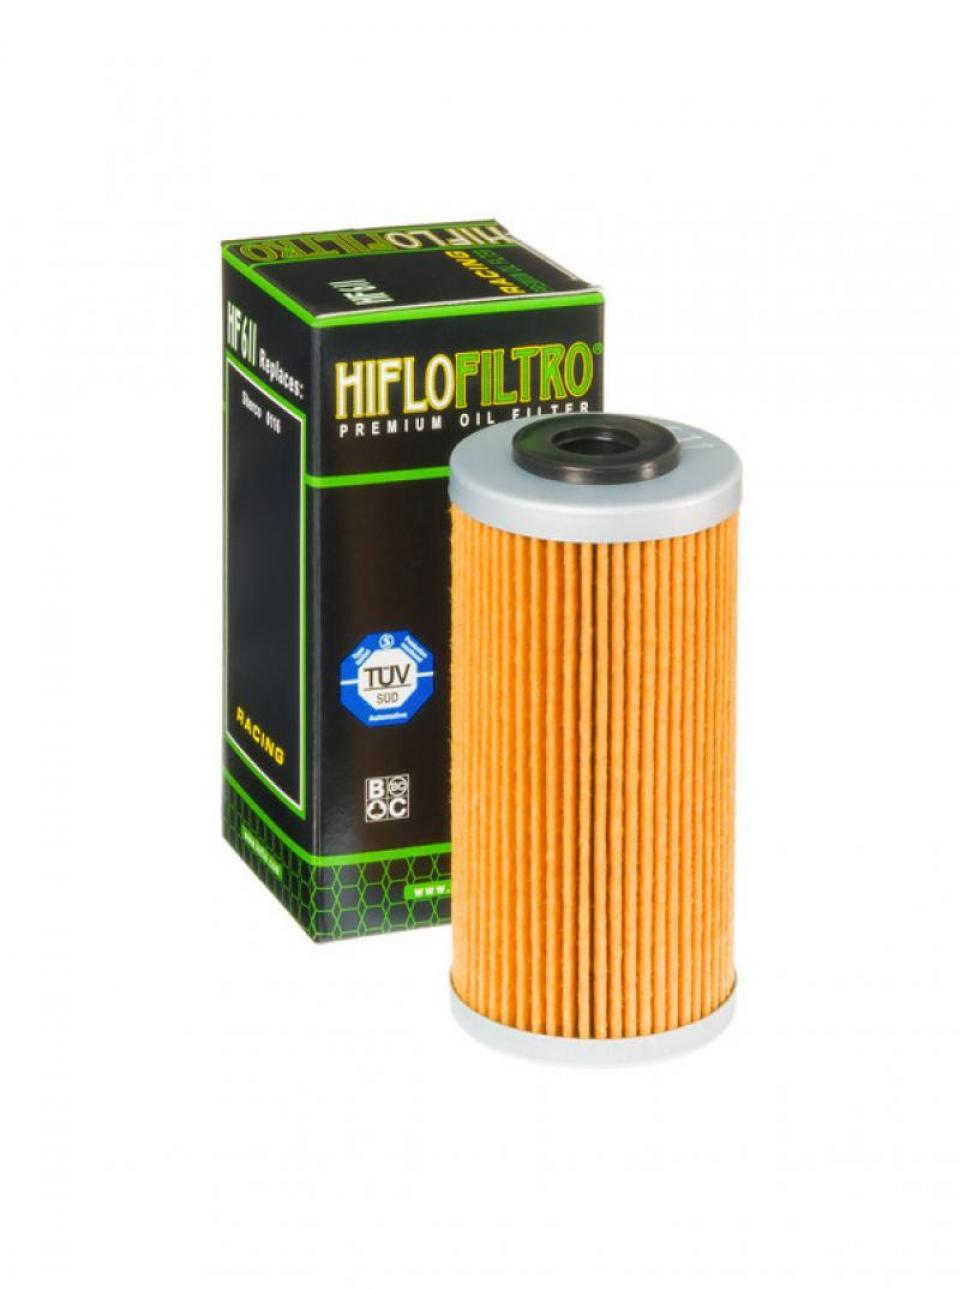 Filtre à huile Hiflofiltro pour Moto Husqvarna 449 TC 2011 à 2014 Neuf